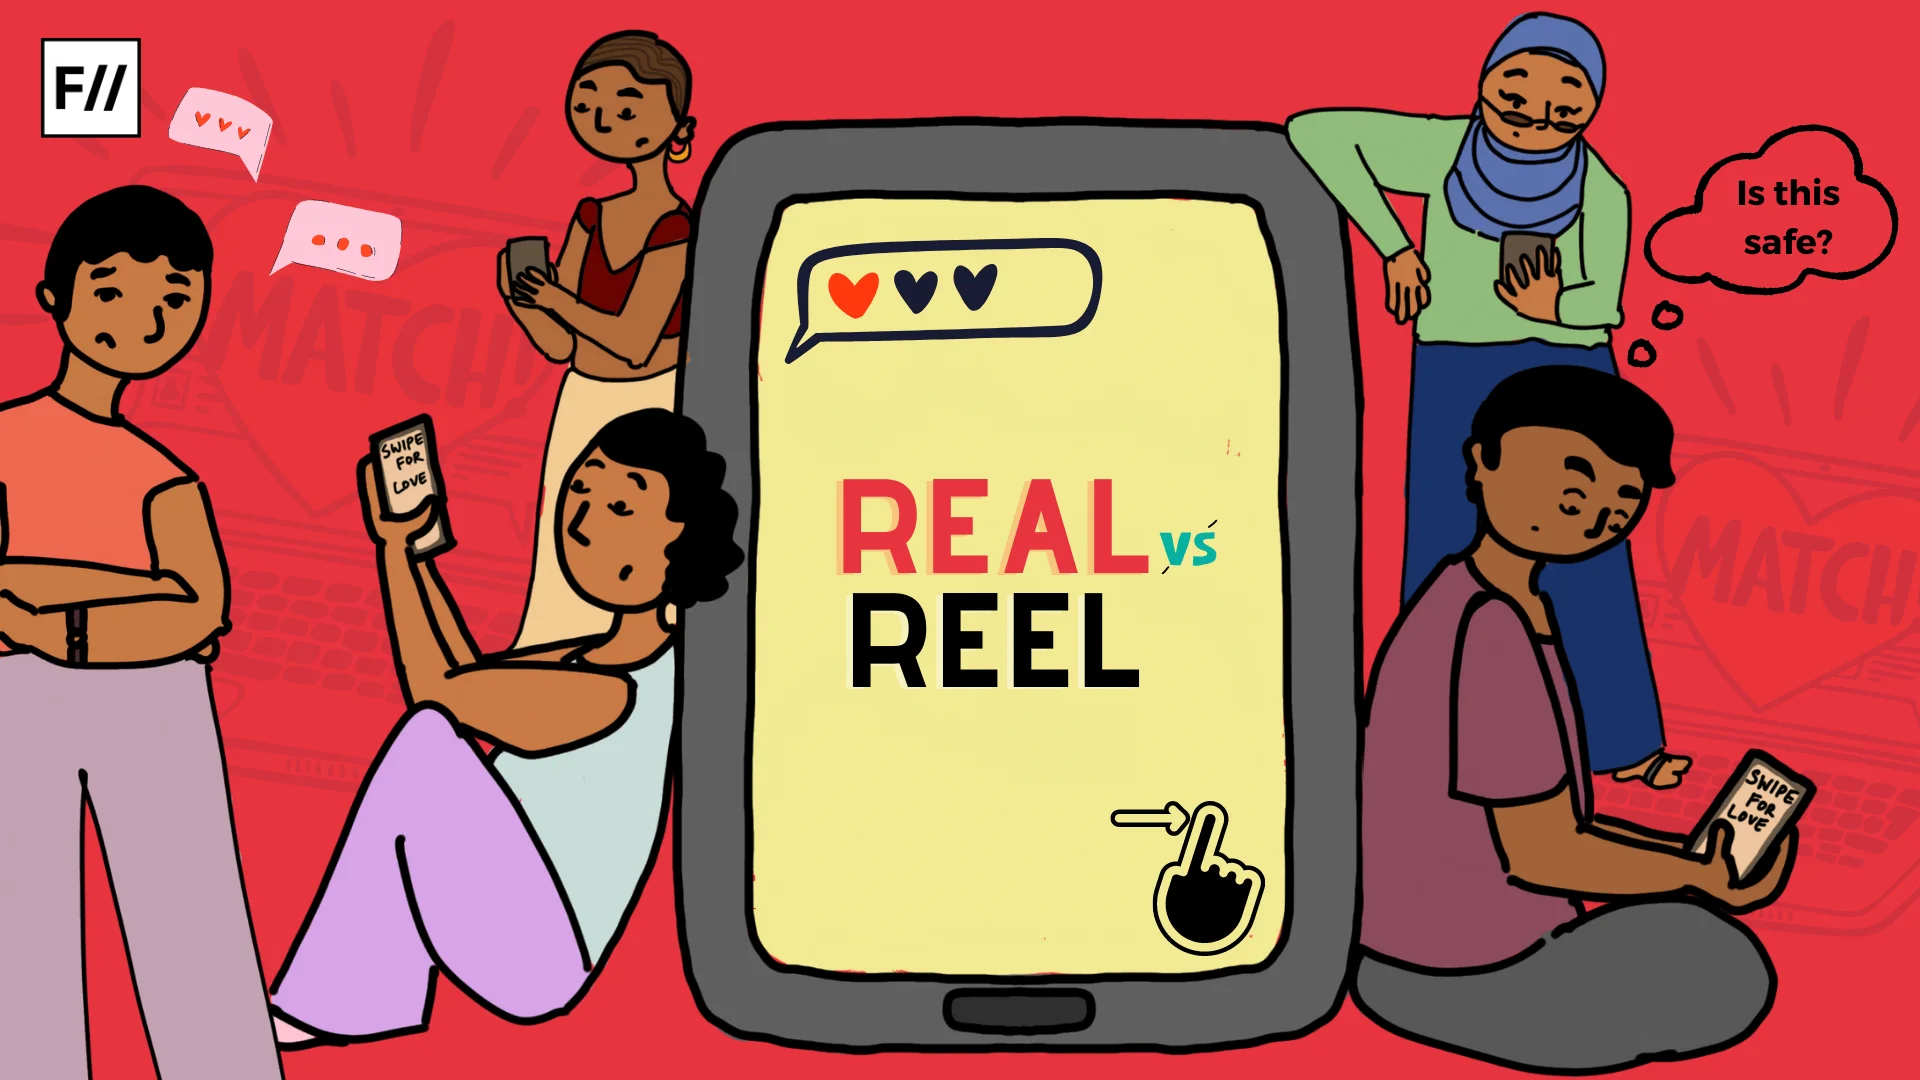 REAL LOVE, REEL LOVE, Reel vs real